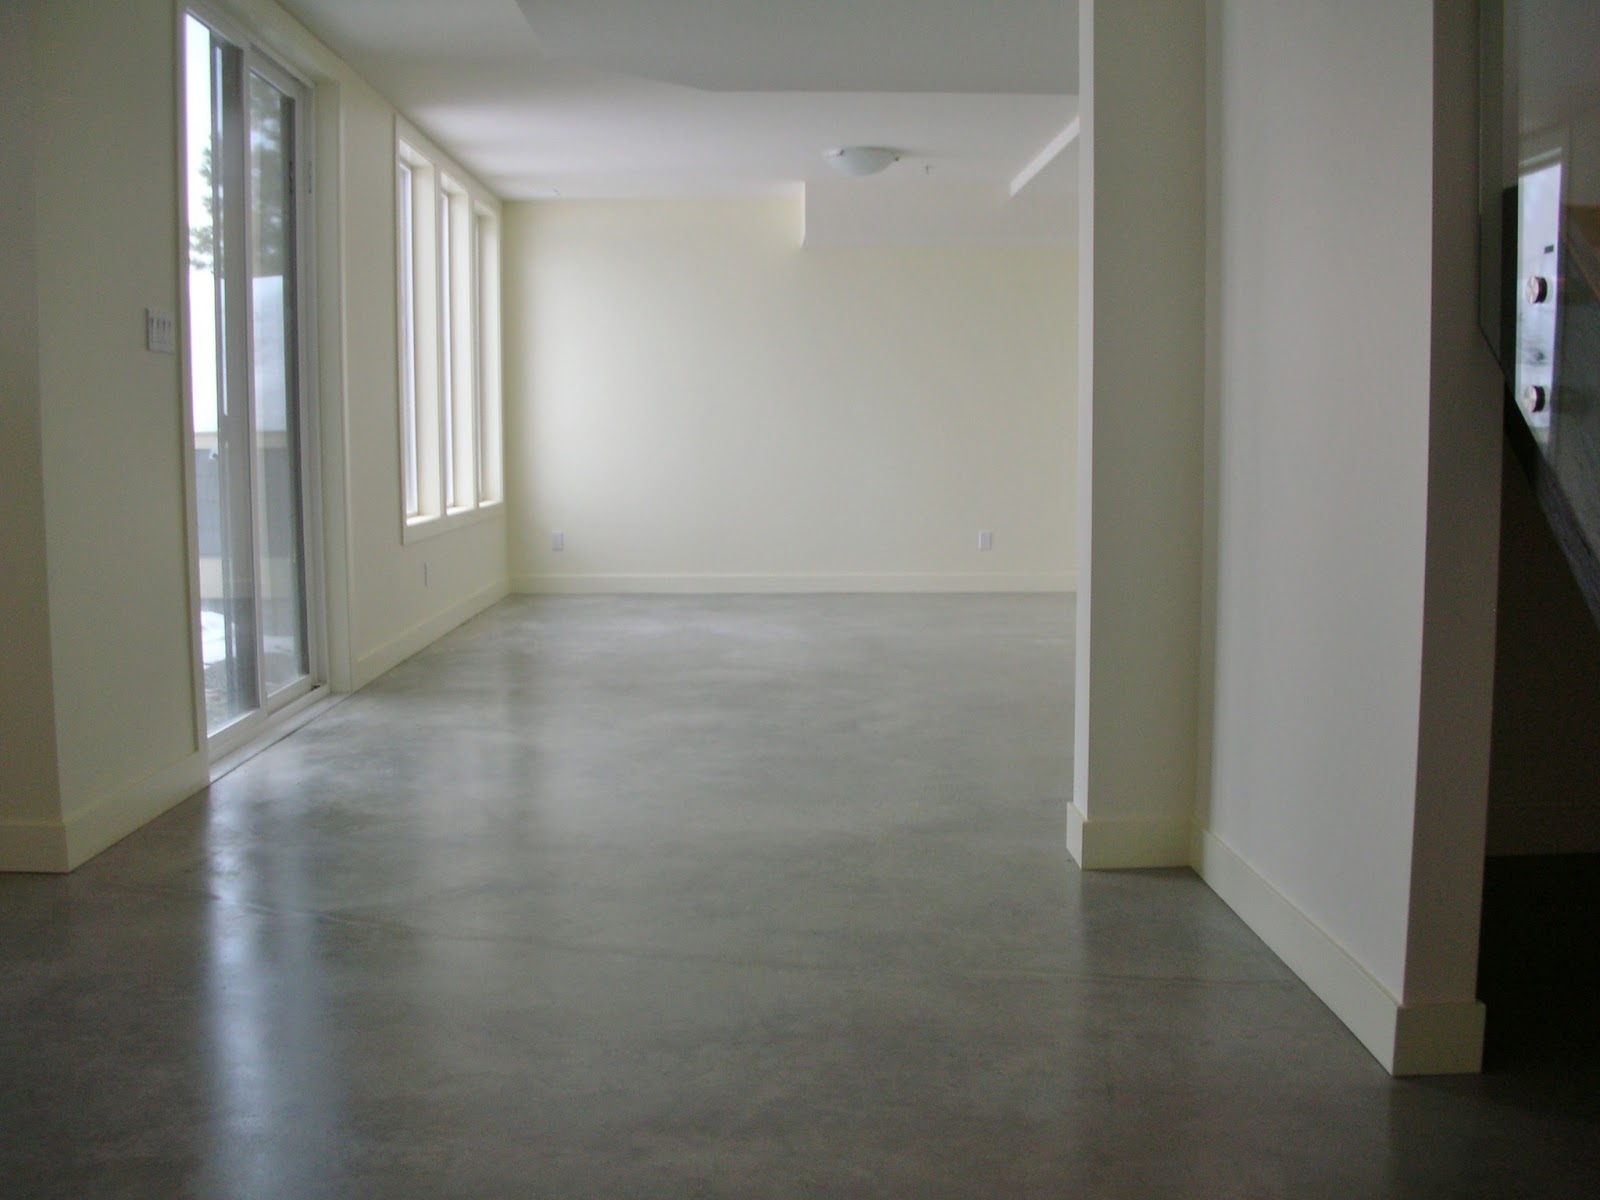 MODE CONCRETE: Modern, Natural, Eco-Friendly Basement Concrete Floors